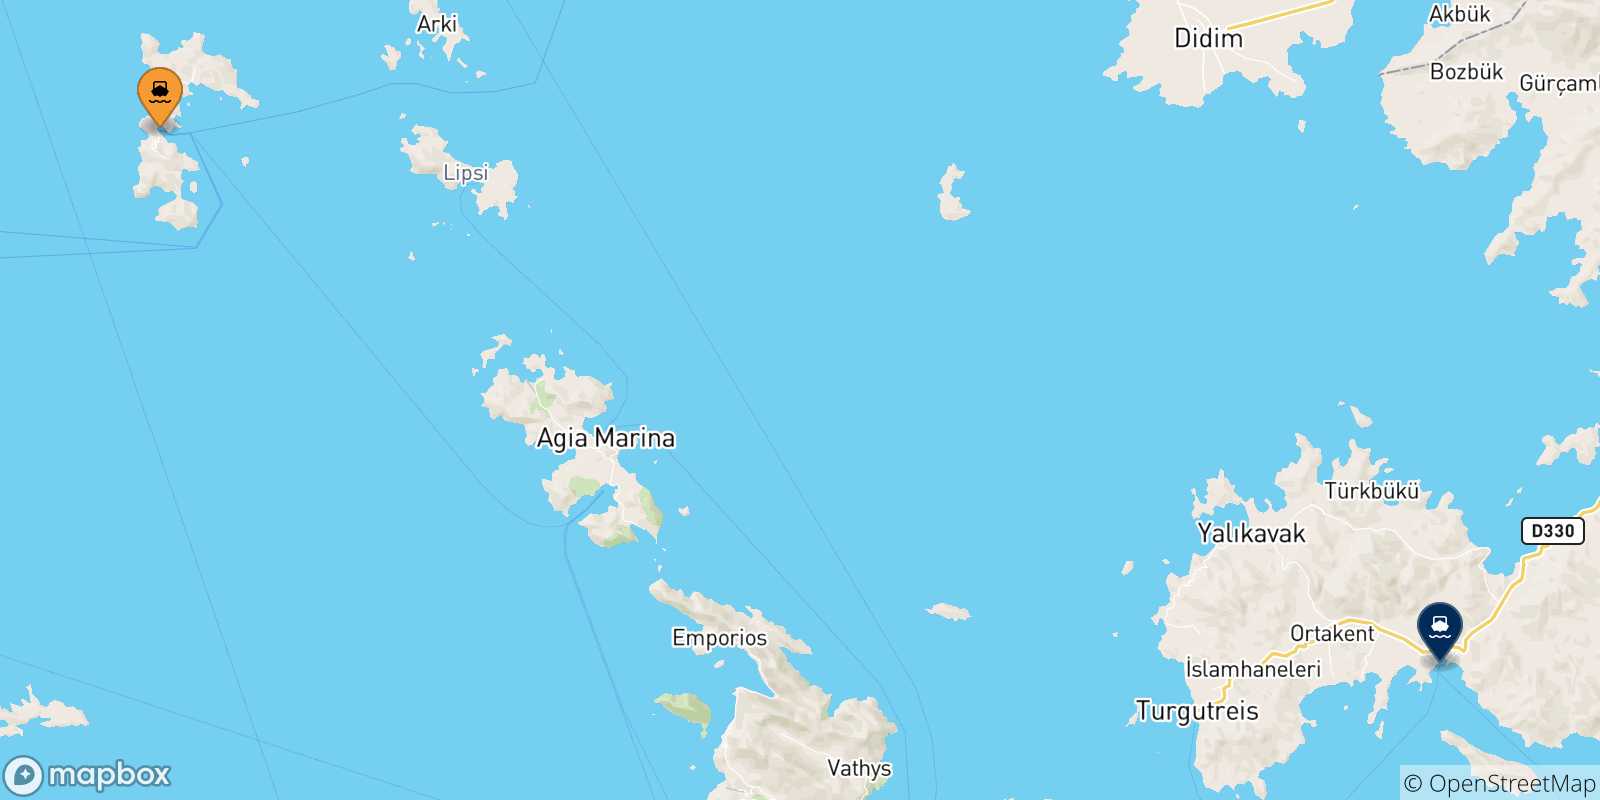 Mappa delle possibili rotte tra Patmos e la Turchia